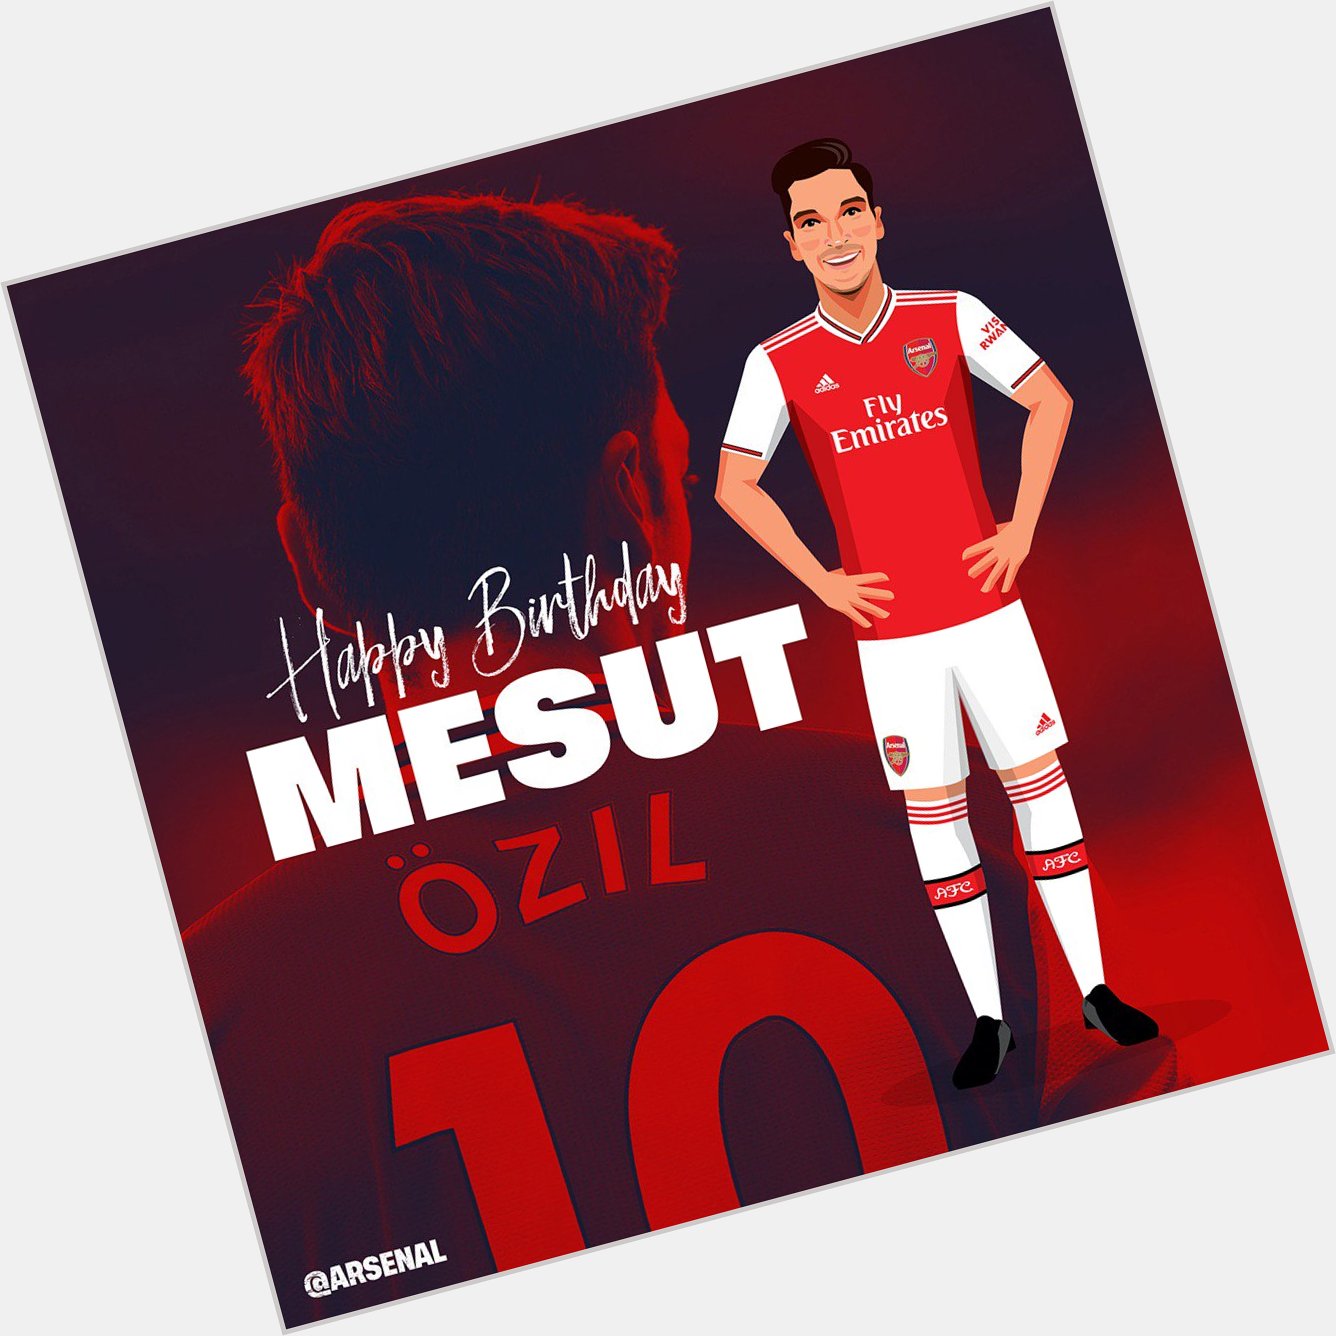 Happy birthday Mesut Ozil 